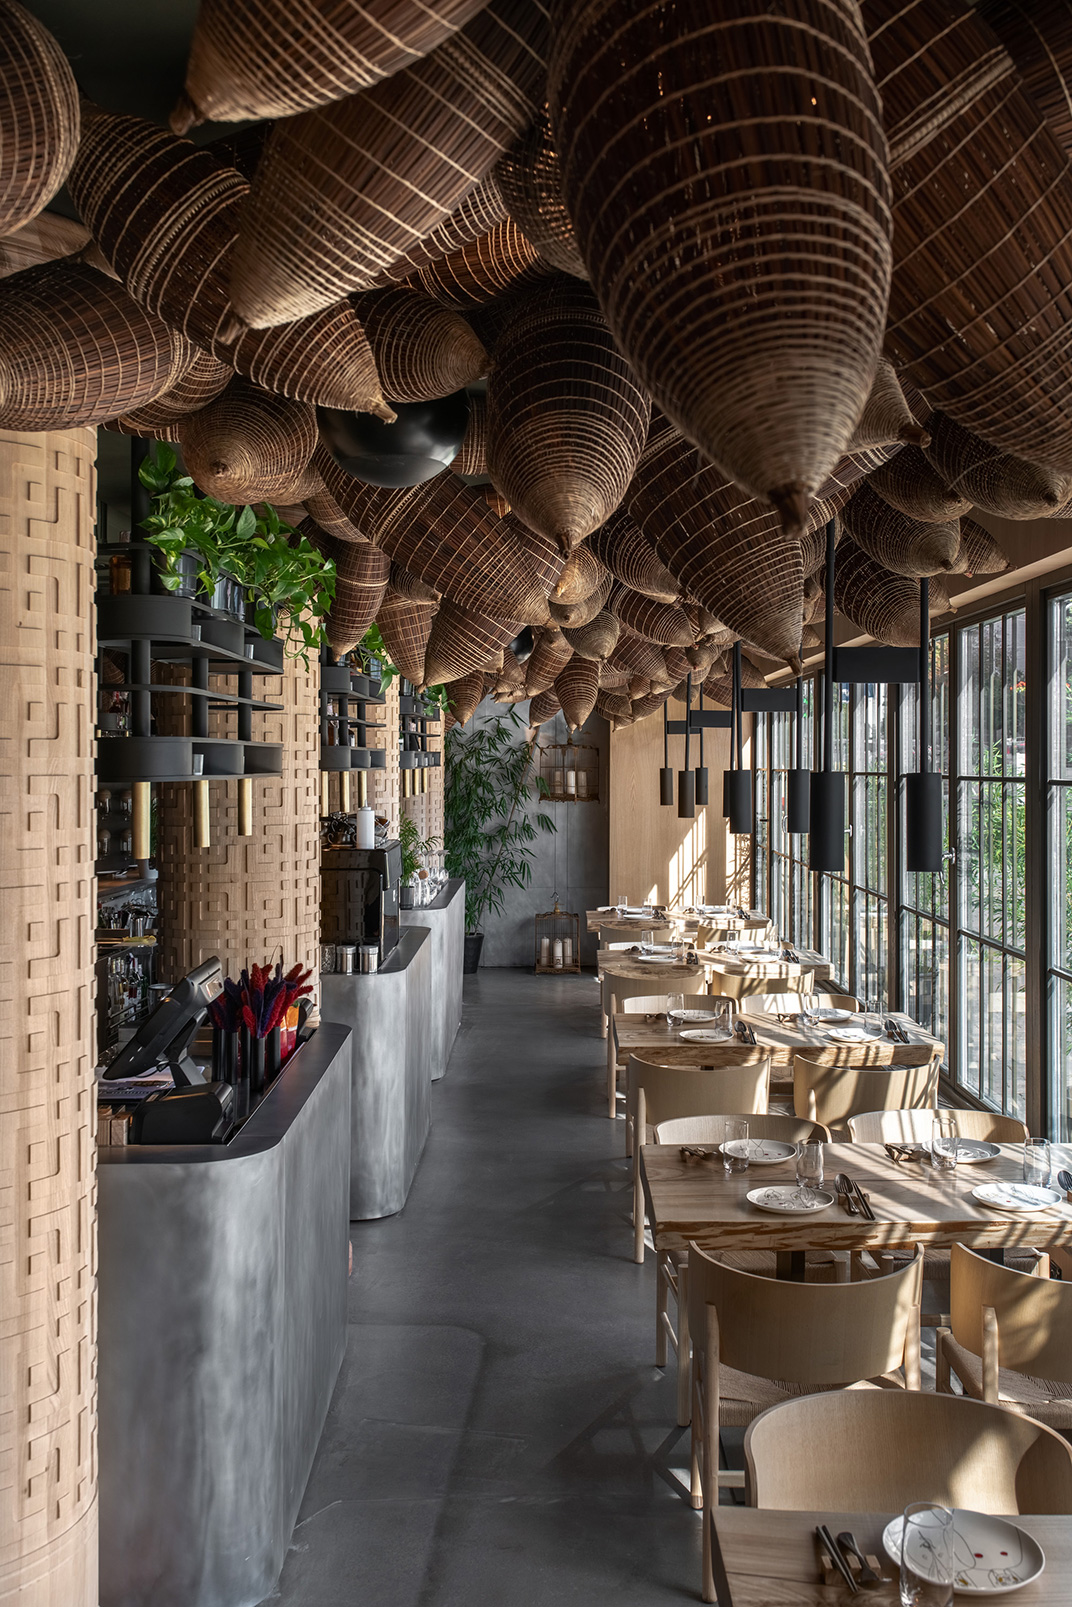 手工材料餐厅设计 编织 吊顶 食材展示 餐厅LOGO VI设计 空间设计 视觉餐